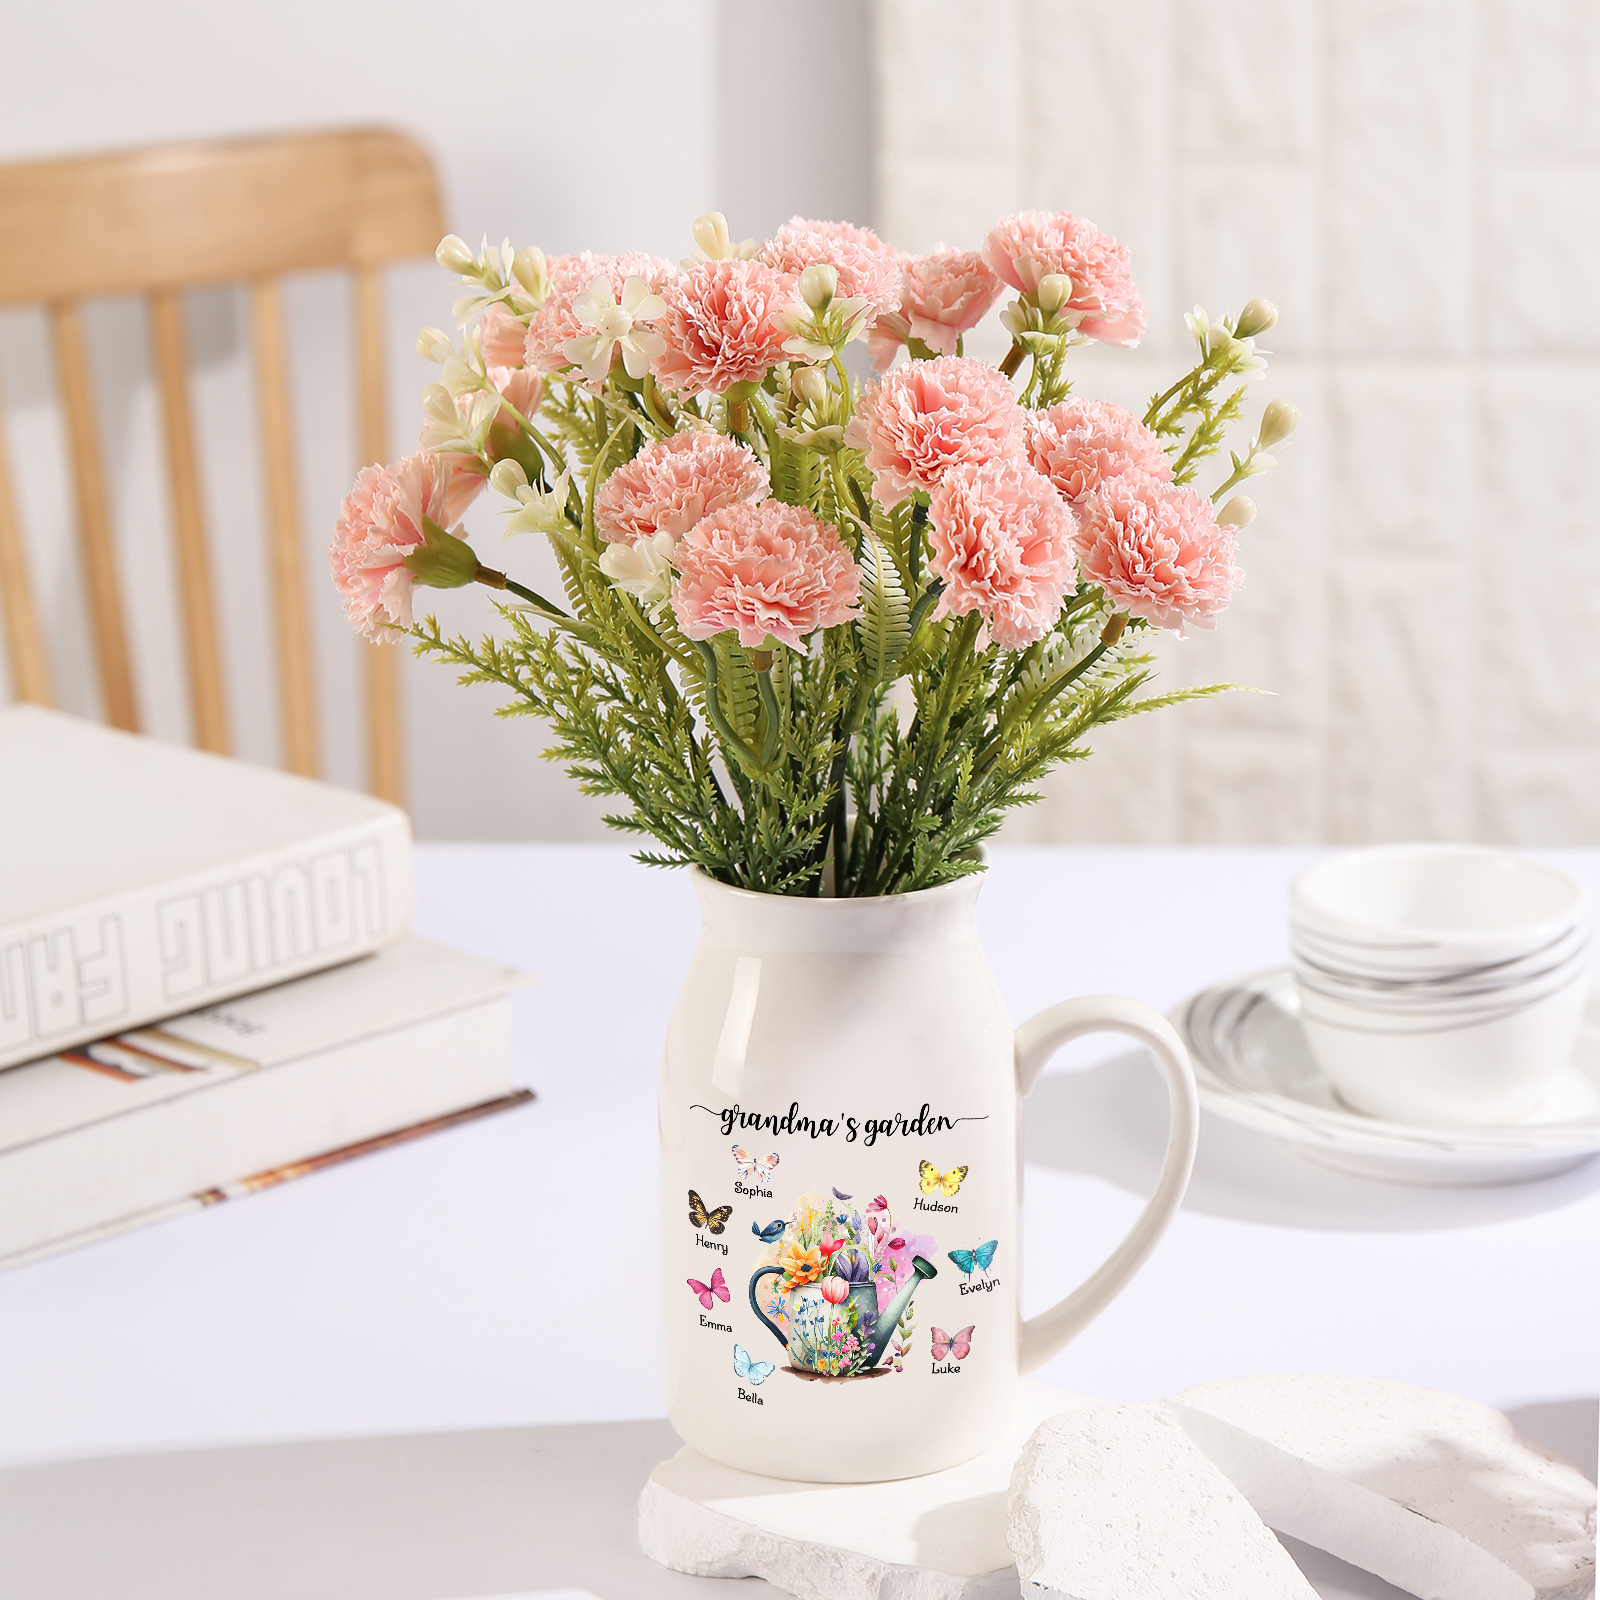 7 Names - Personalized Name "Grandma's Garden" Ceramic Vase as a Gift for Grandma